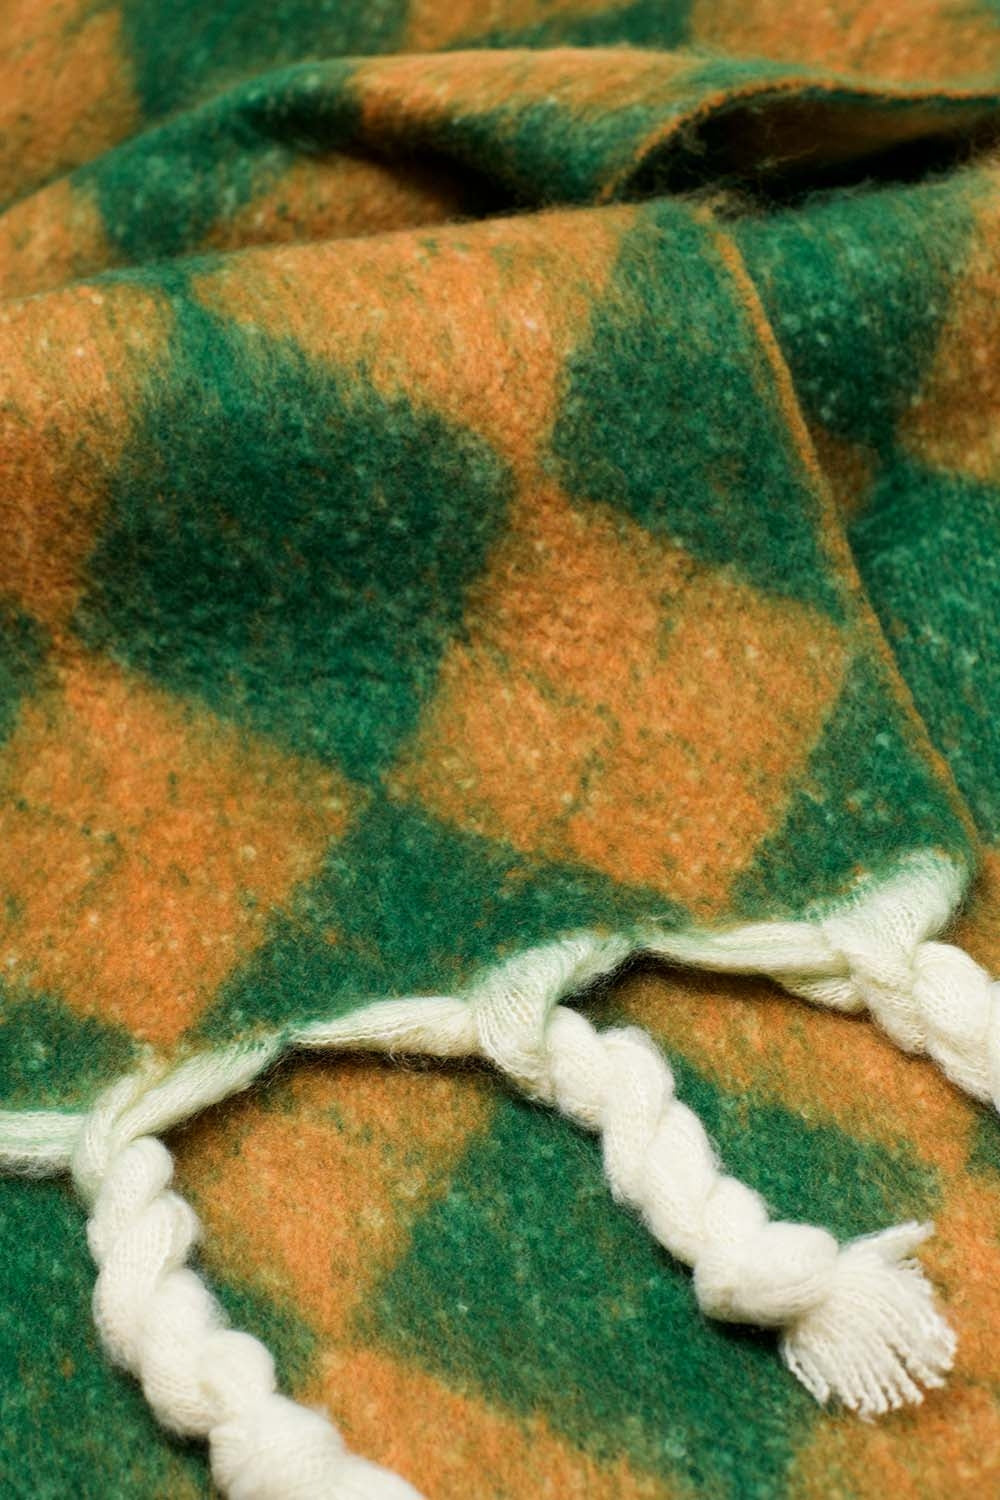 Sciarpa a maglia grossa con motivo argyle in verde